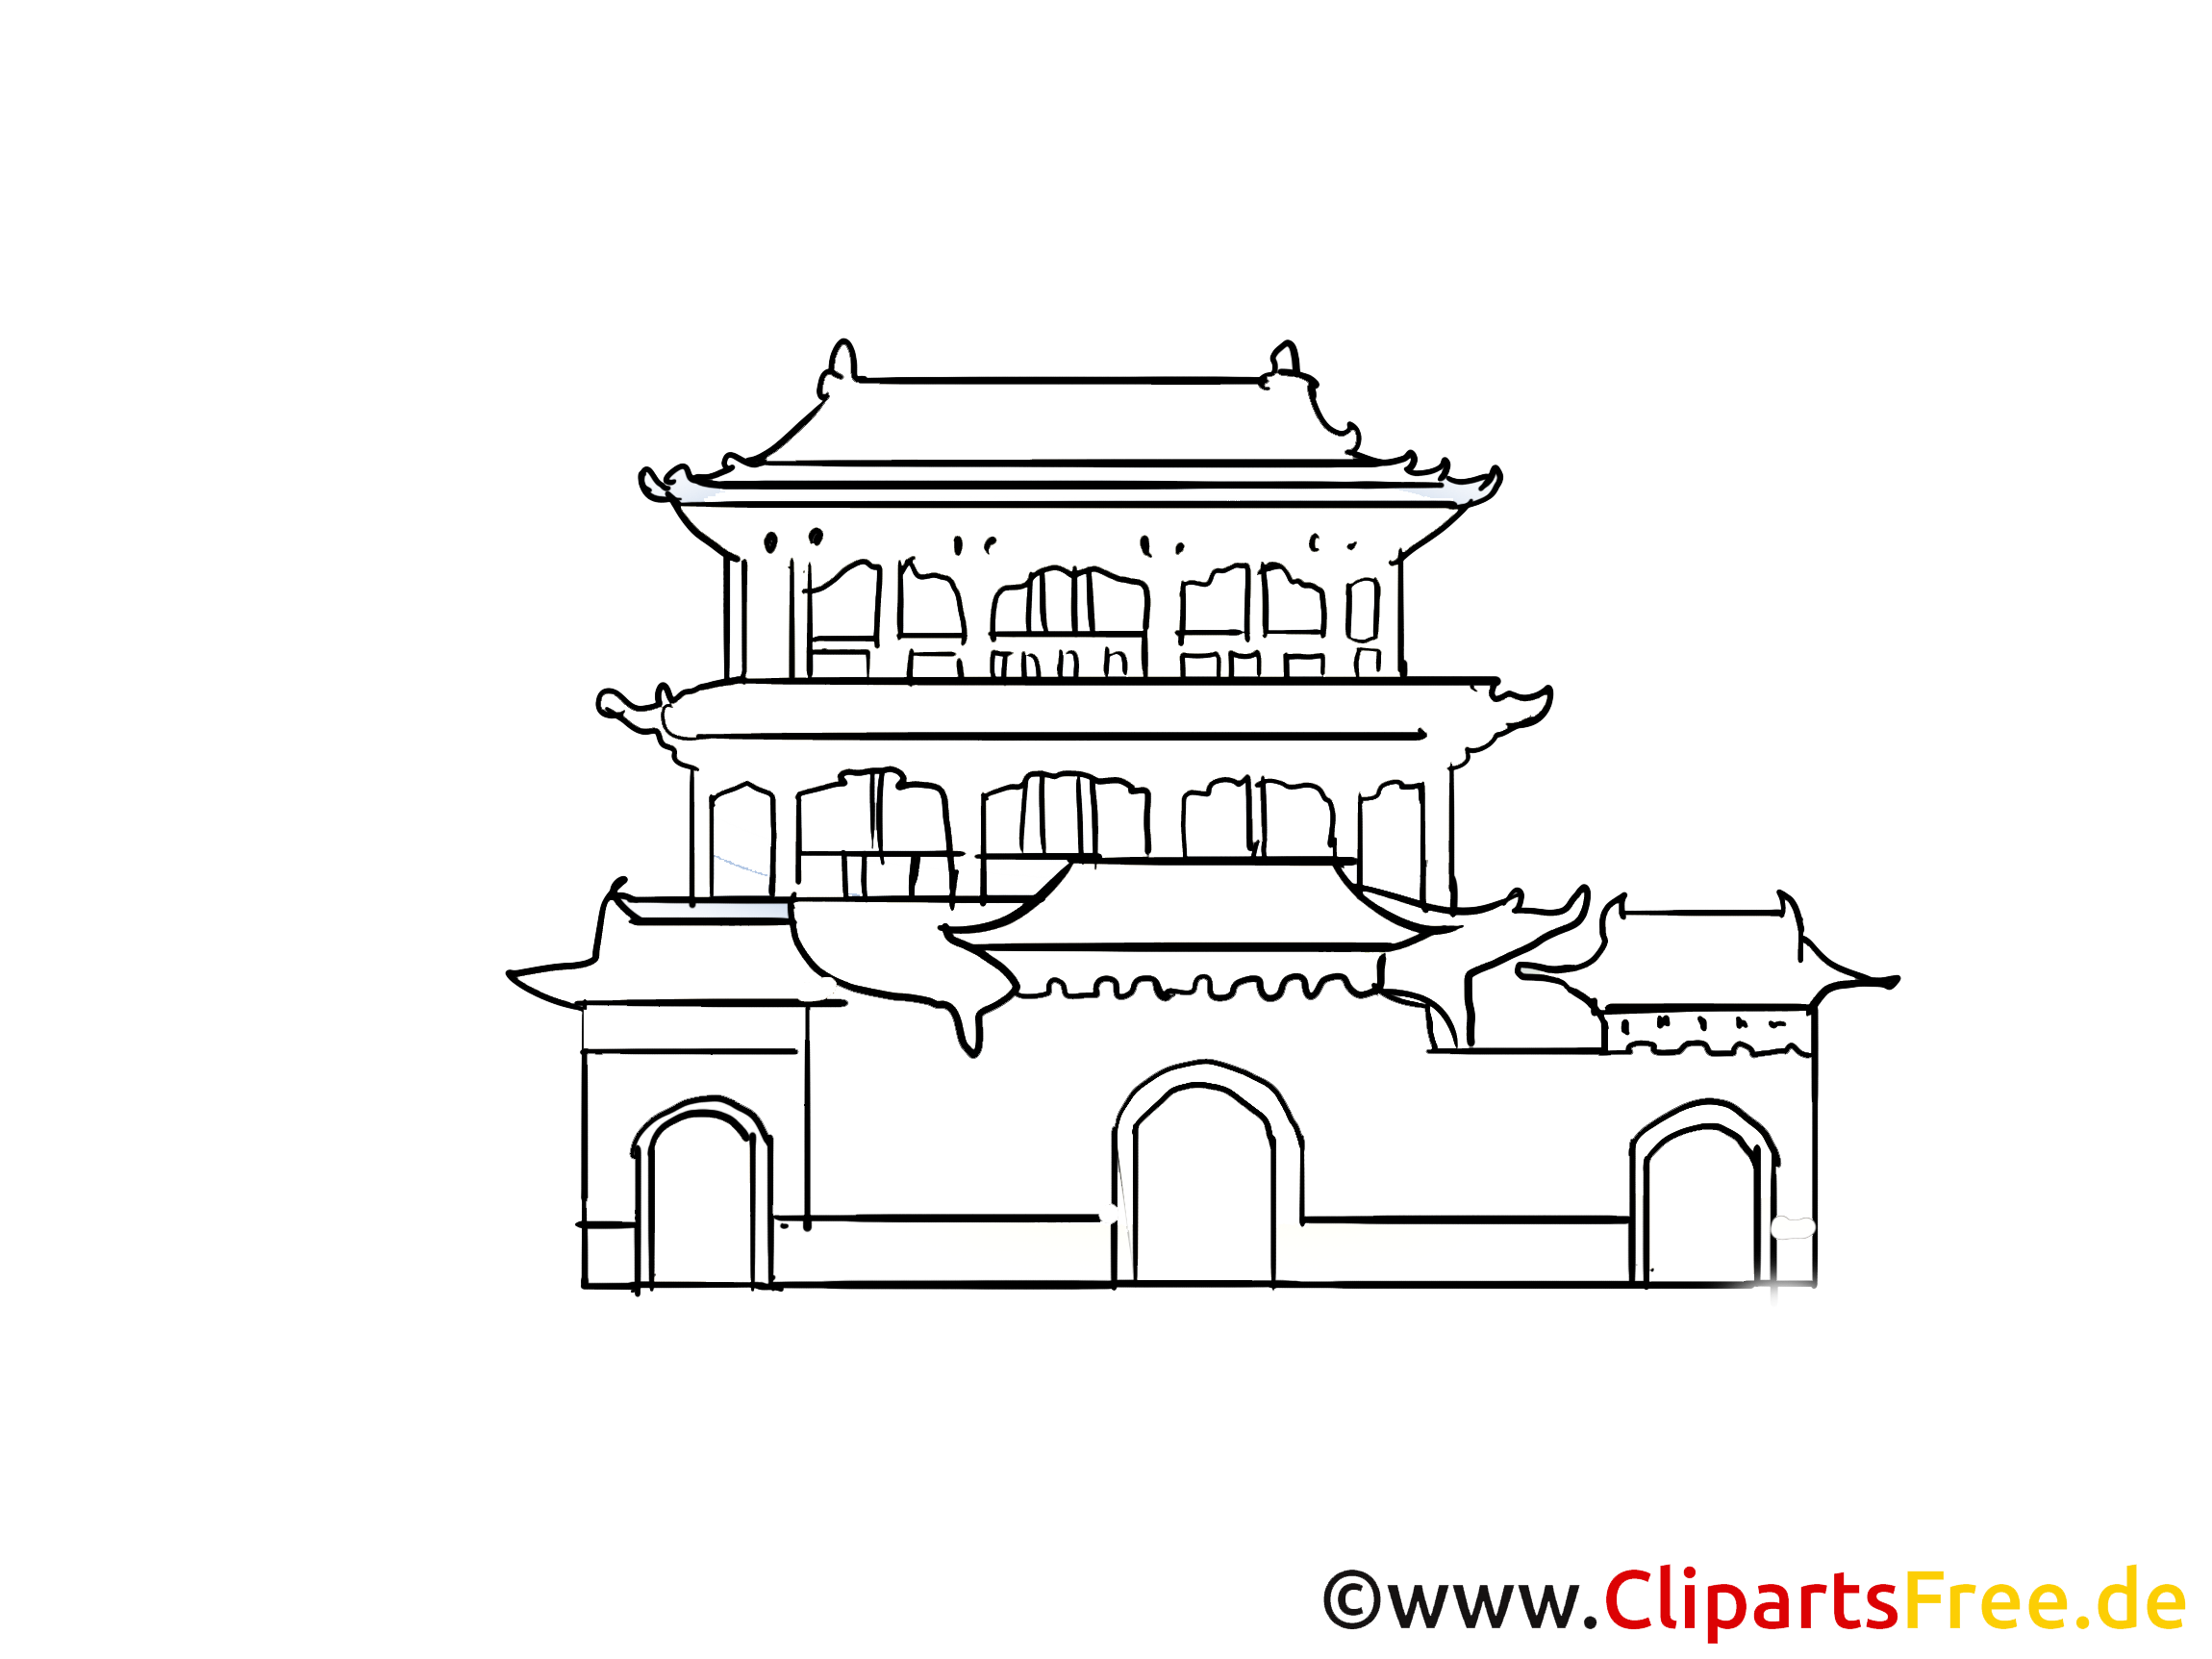 Temple cliparts gratuis - Chine images gratuites